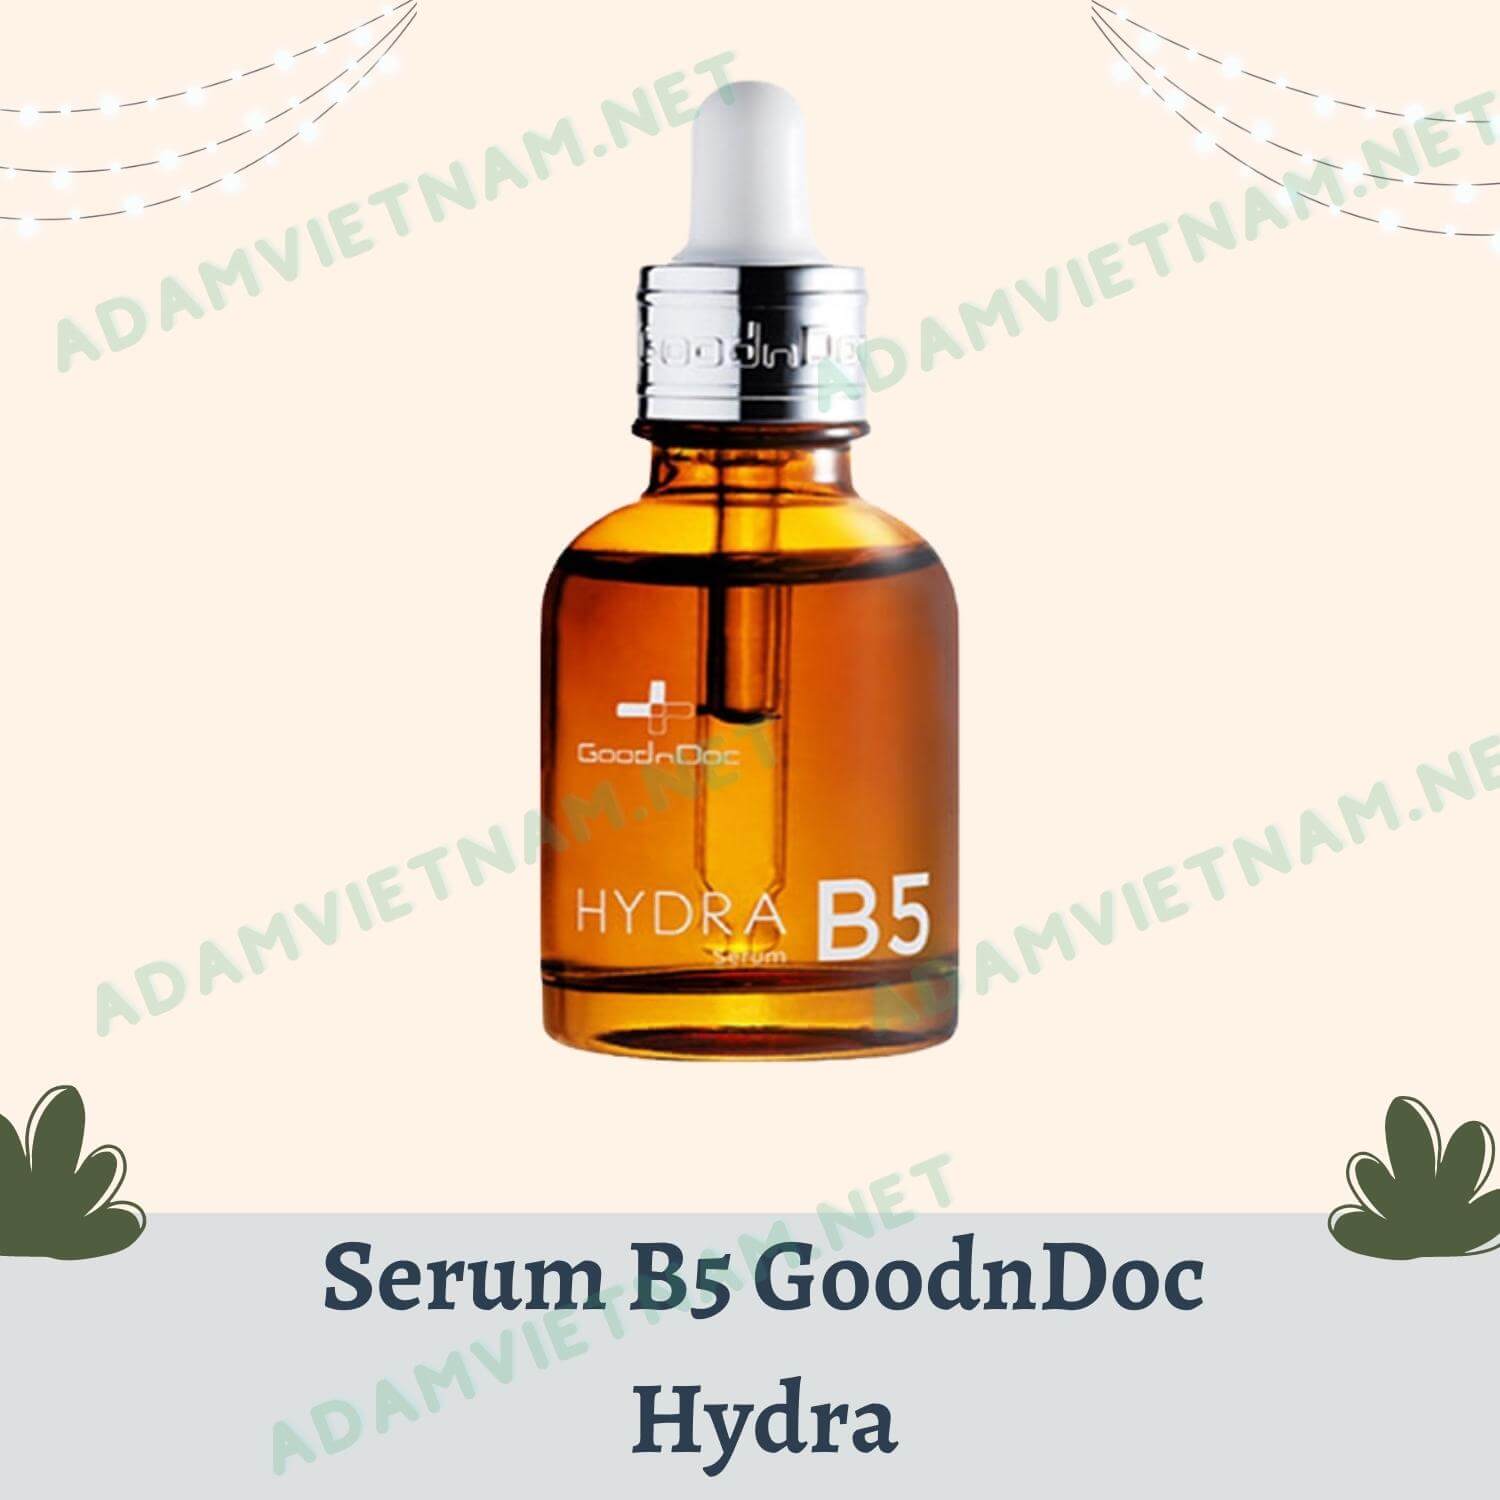 Serum B5 GoodnDoc Hydra